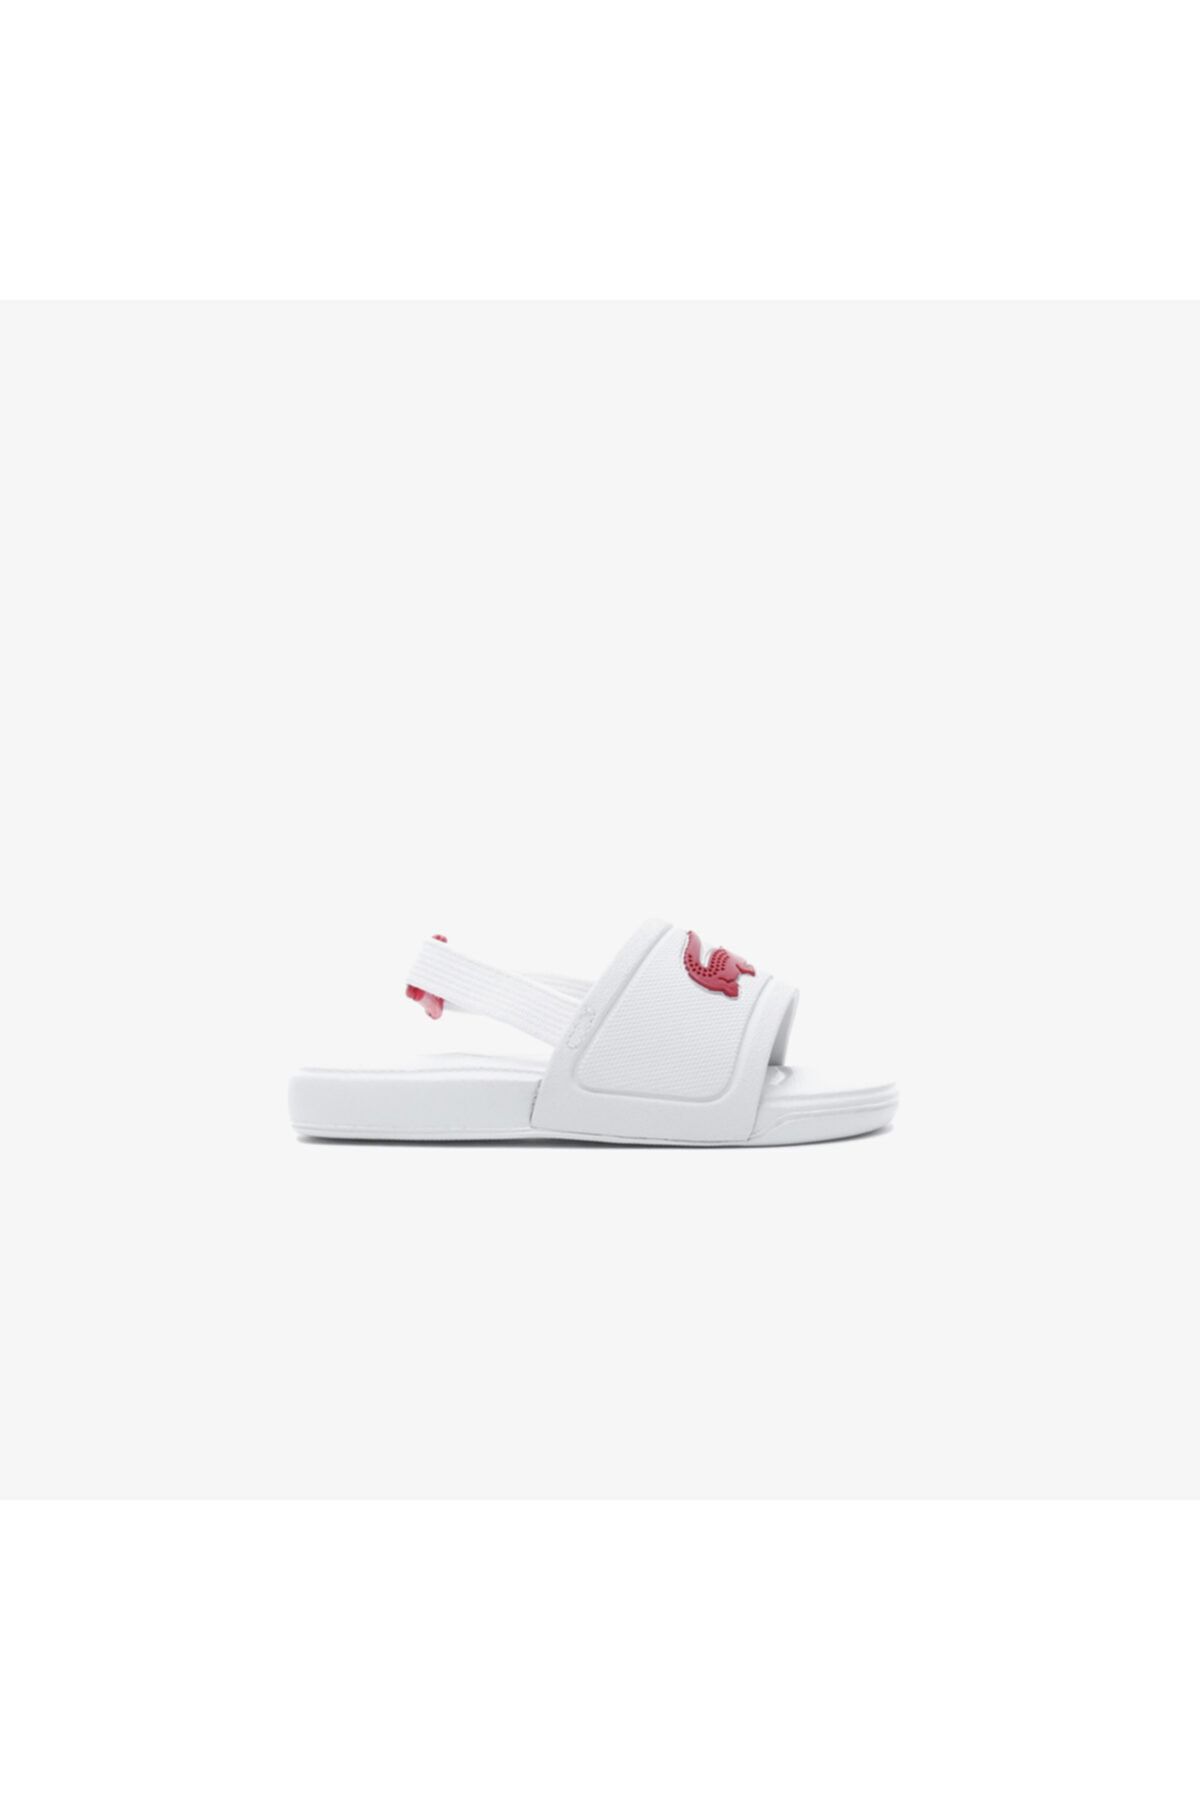 Nike Lacoste L.30 Slide 120 1 Cui Çocuk Timsah Baskılı Beyaz - Koyu Pembe Sandalet